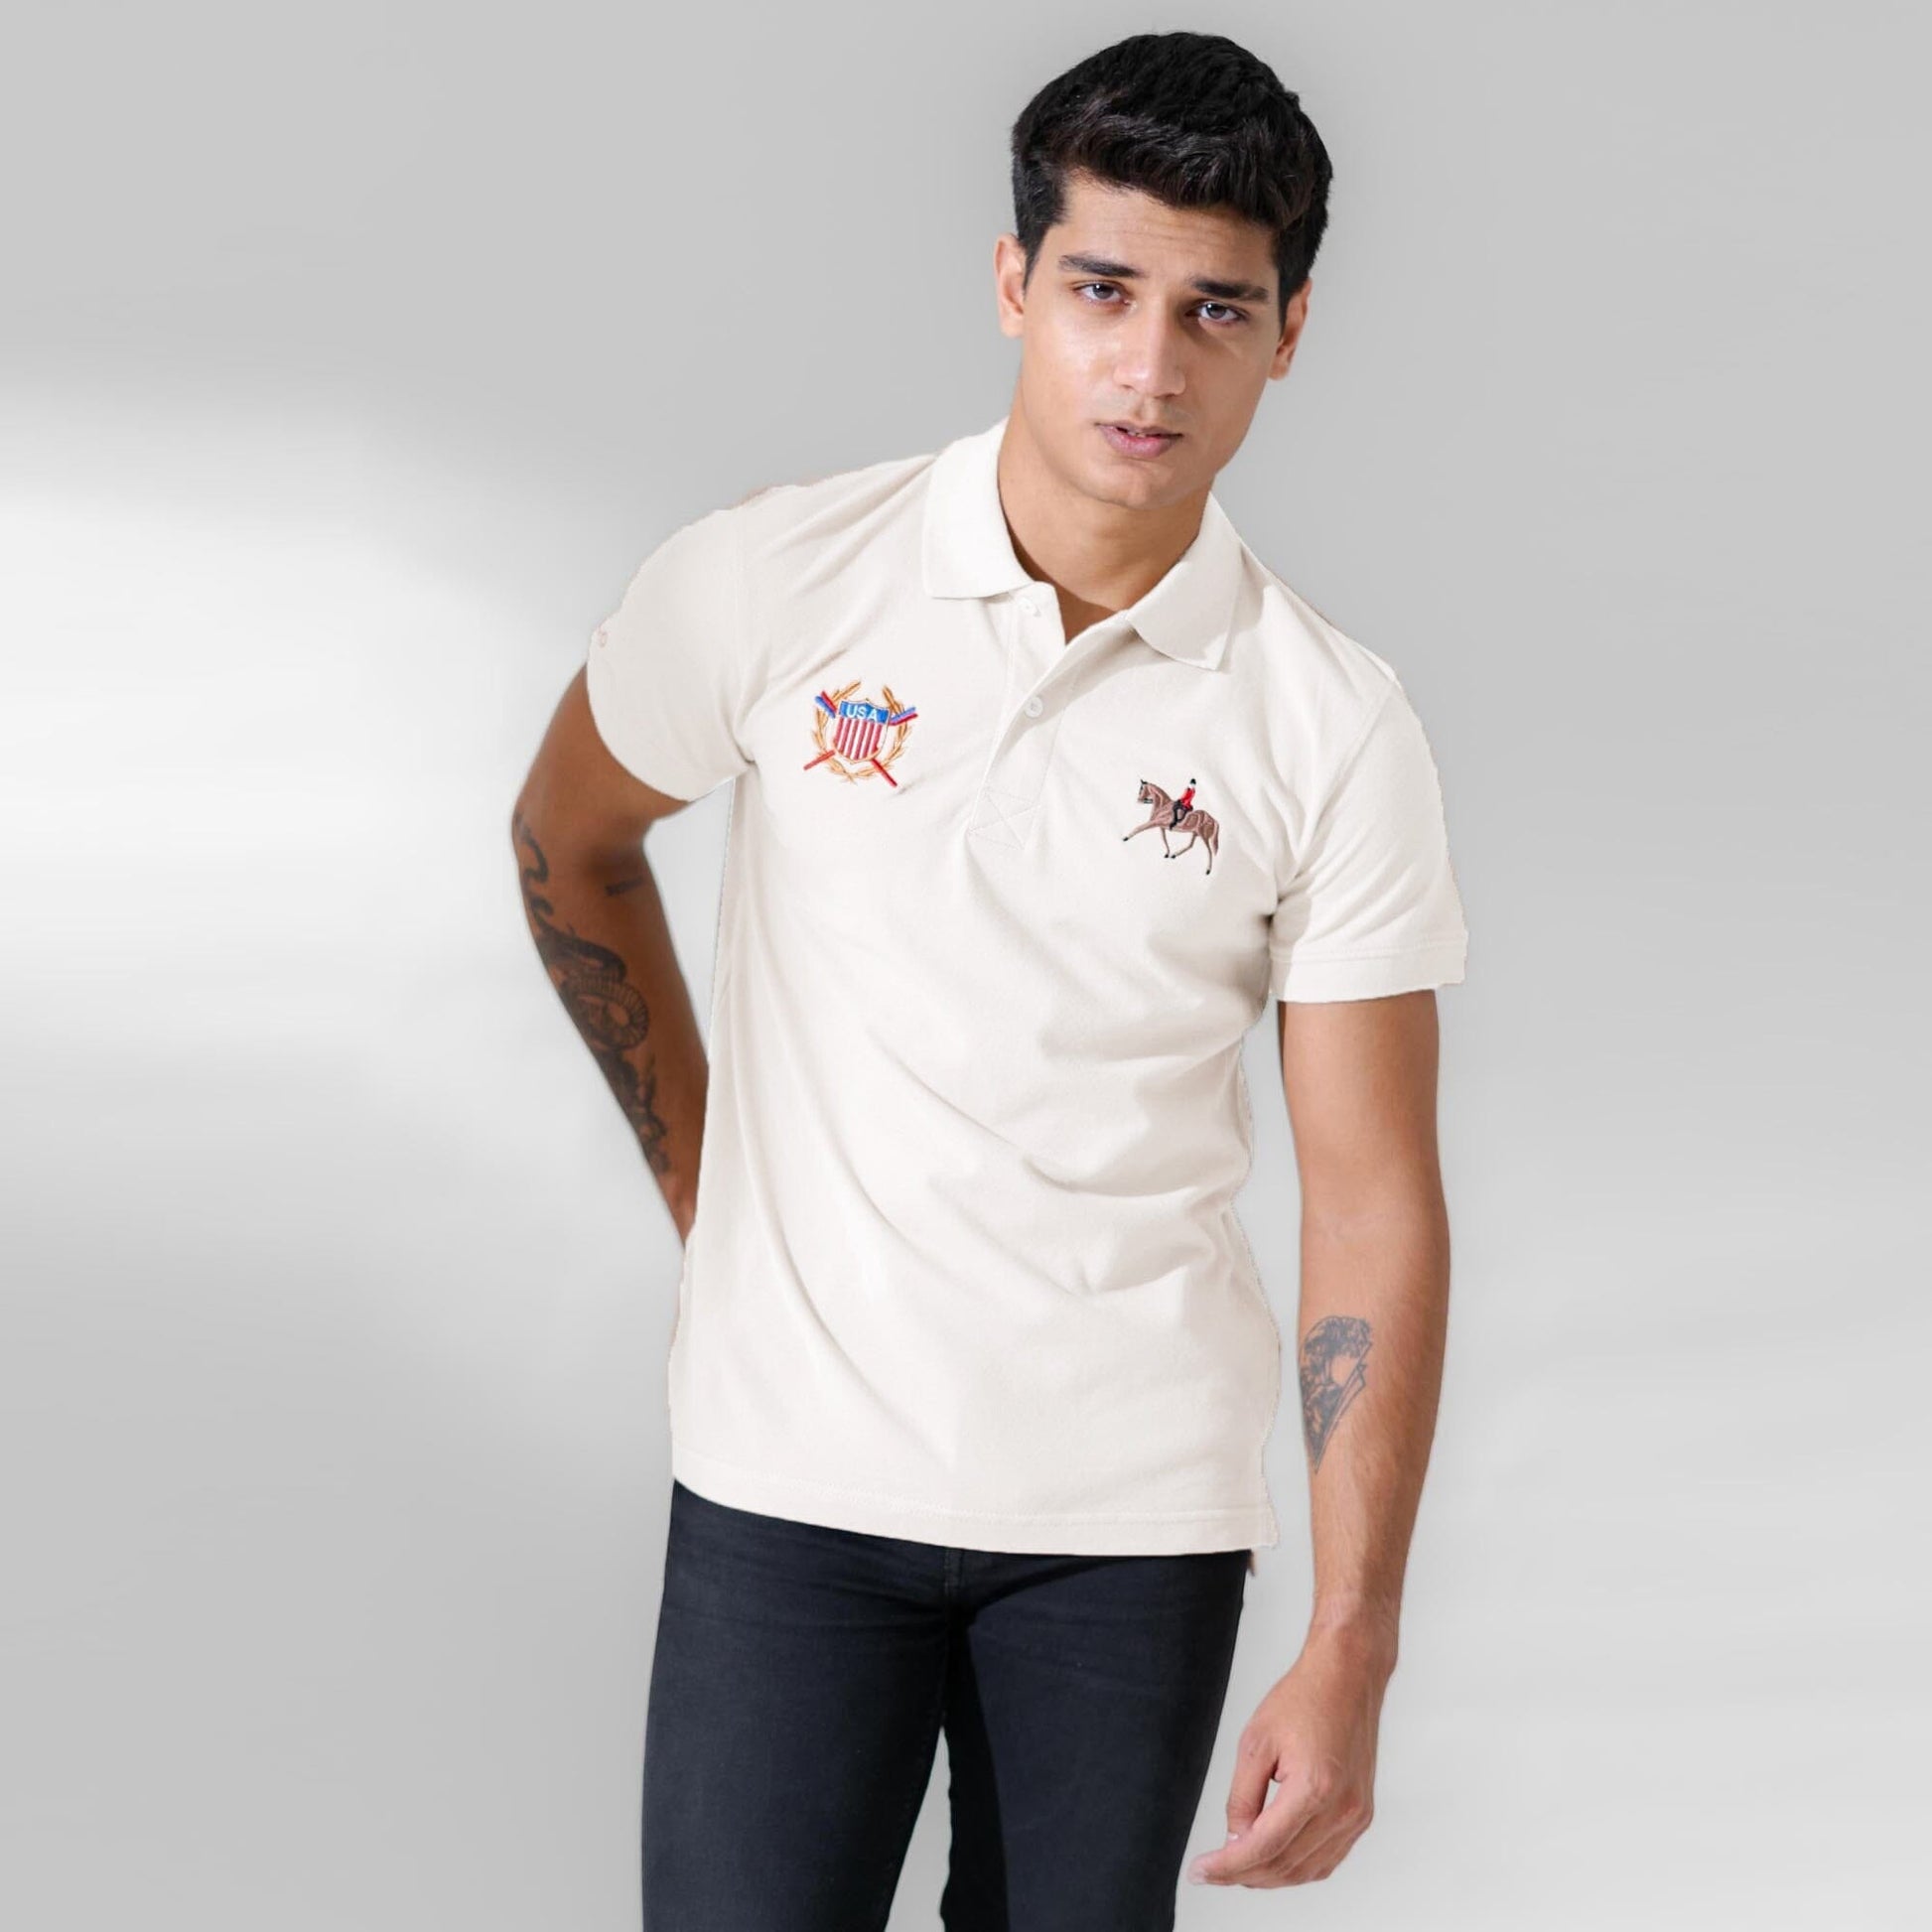 Polo Republica Men's Horse Rider & USA Crest Embroidered Short Sleeve Polo Shirt Men's Polo Shirt Polo Republica Off White S 